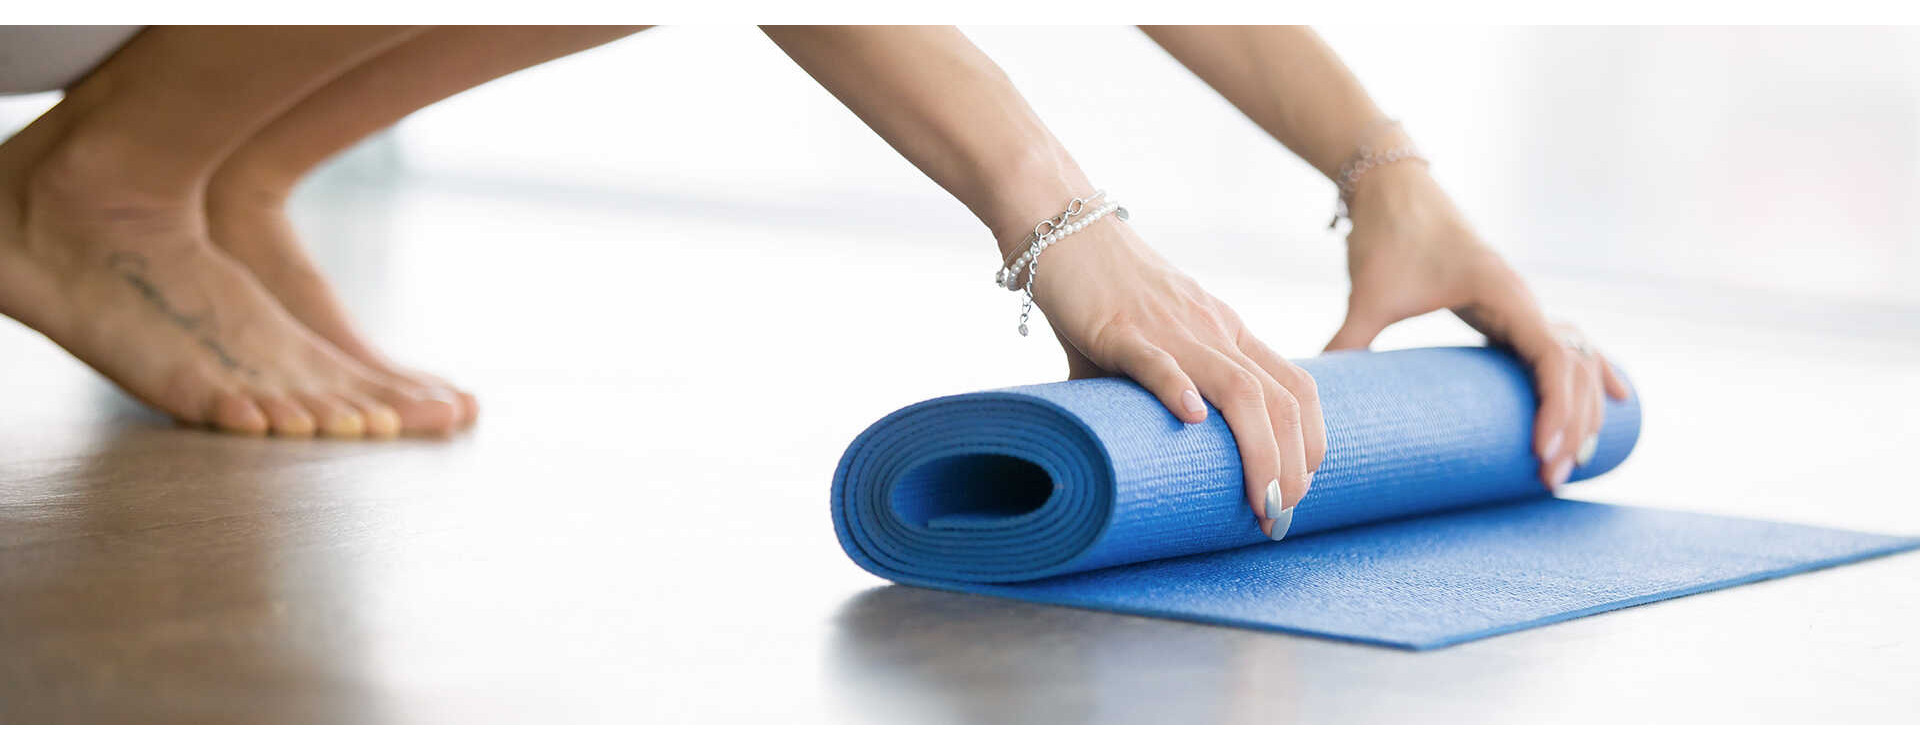 Esterilla de corcho para yoga varios diseños - Vida y Balance